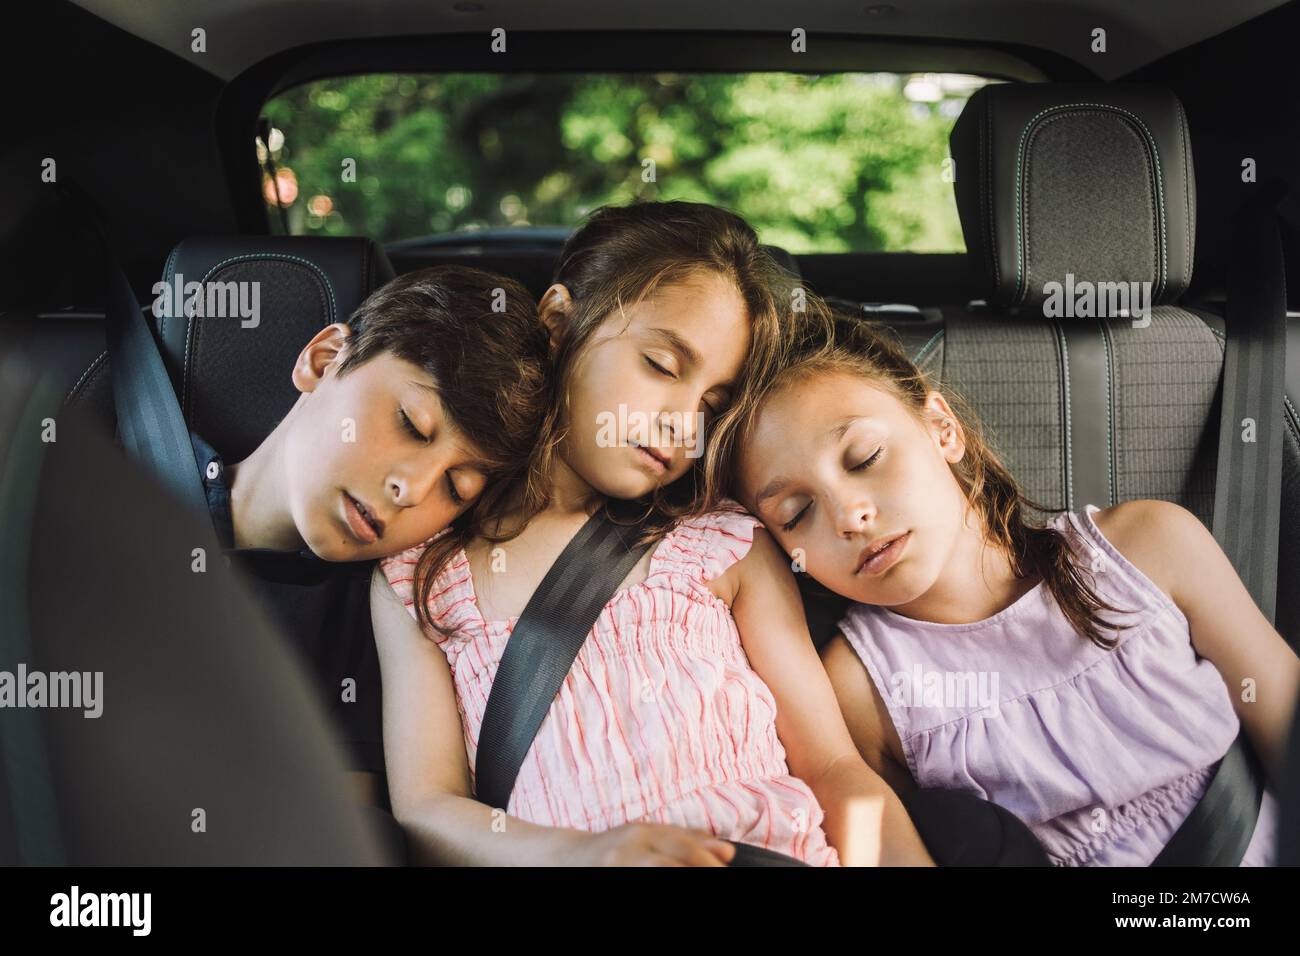 Müde Geschwister schlafen auf dem Rücksitz, während sie im Auto unterwegs  sind Stockfotografie - Alamy